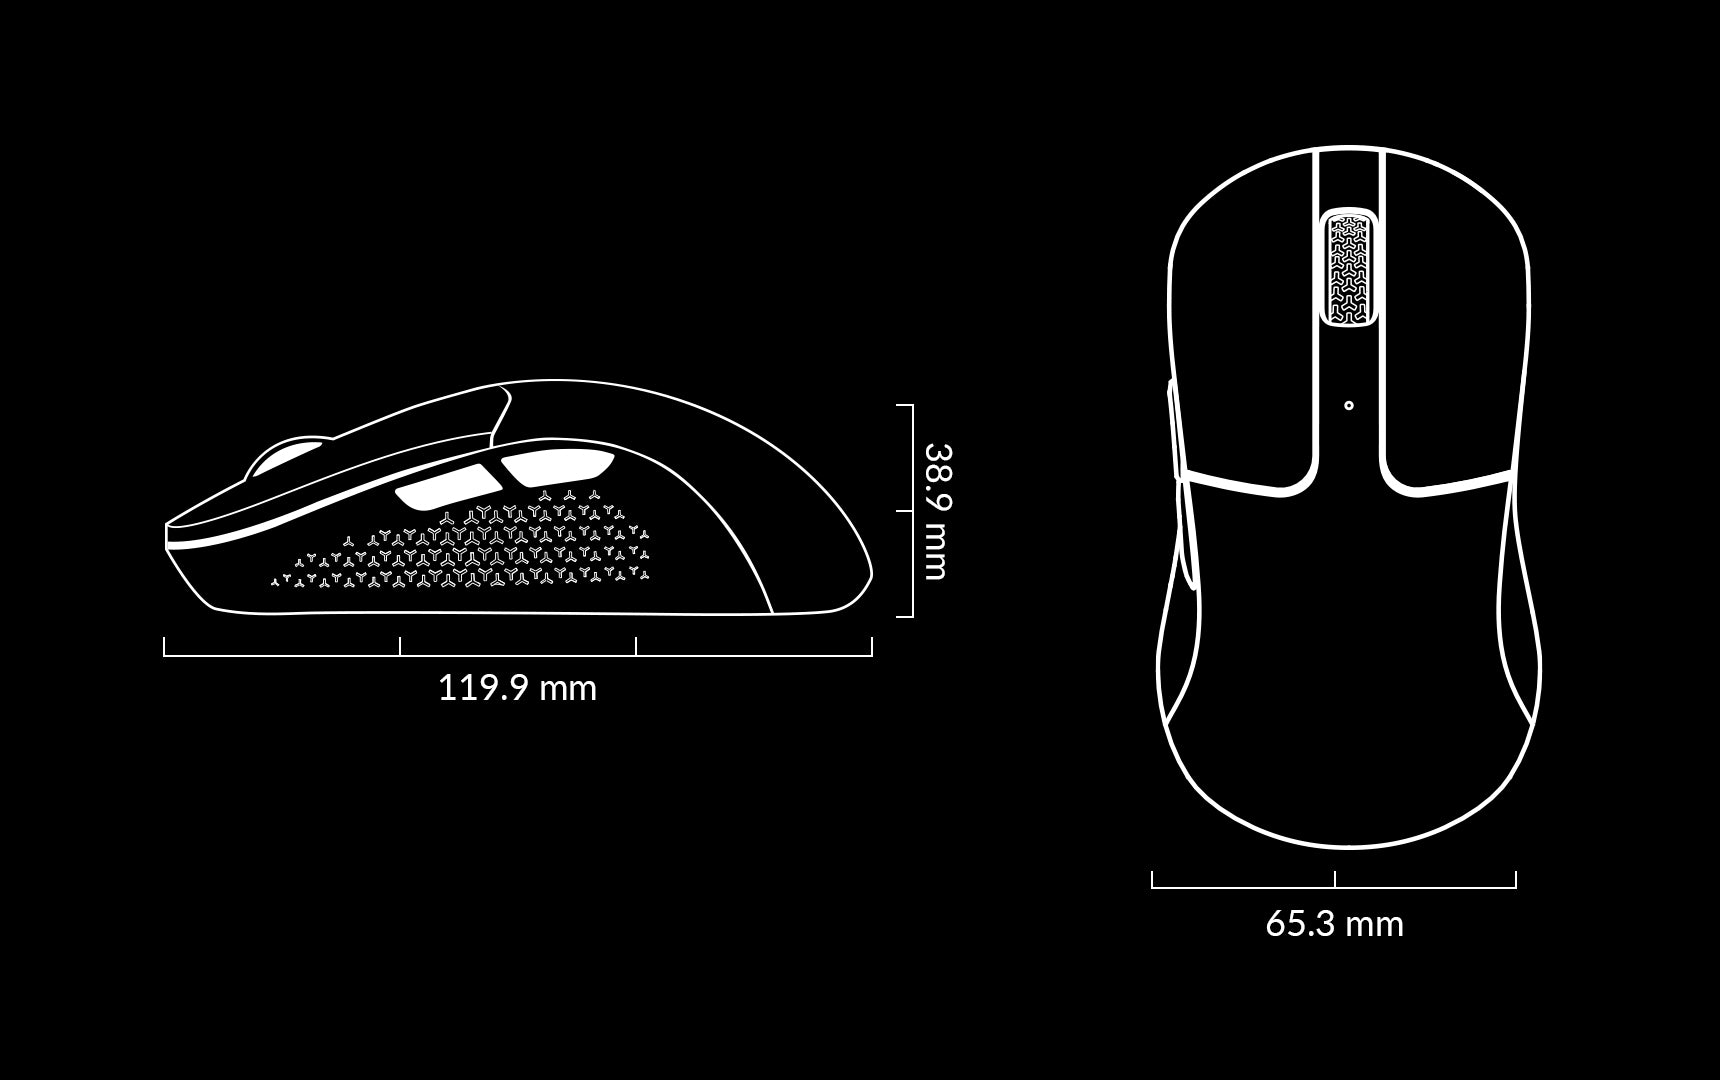 size of the Keychron M3 mini mouse.jpeg